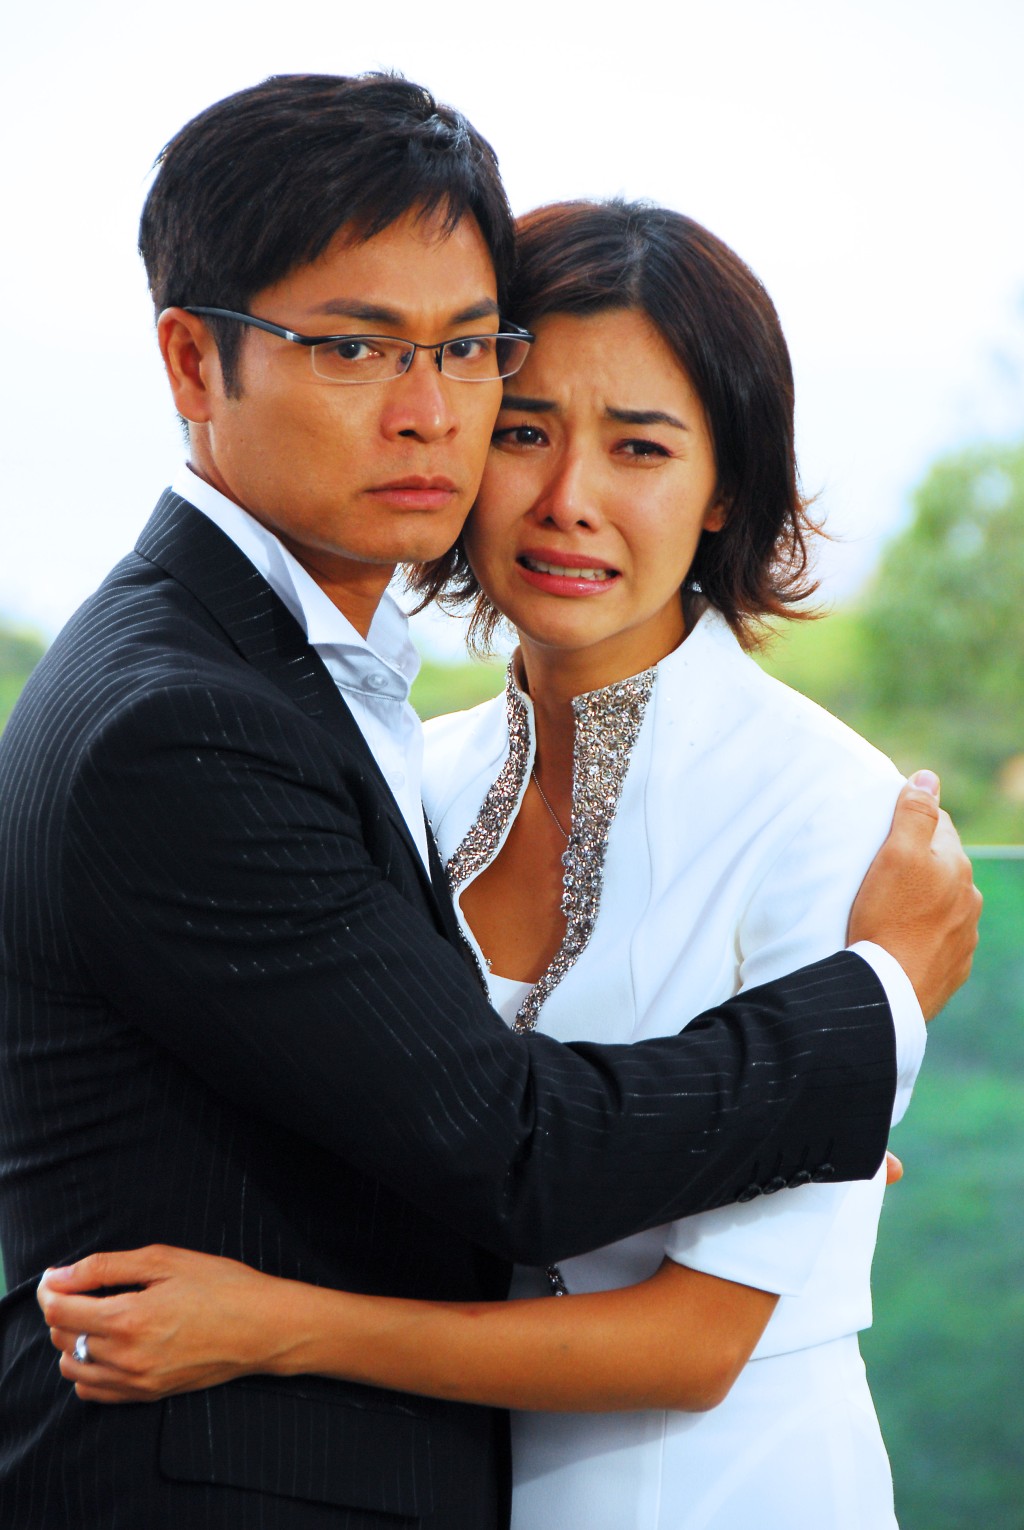 郭晋安与蒙嘉慧在2008年的《与敌同行》合作，开始见到脸颊松弛。